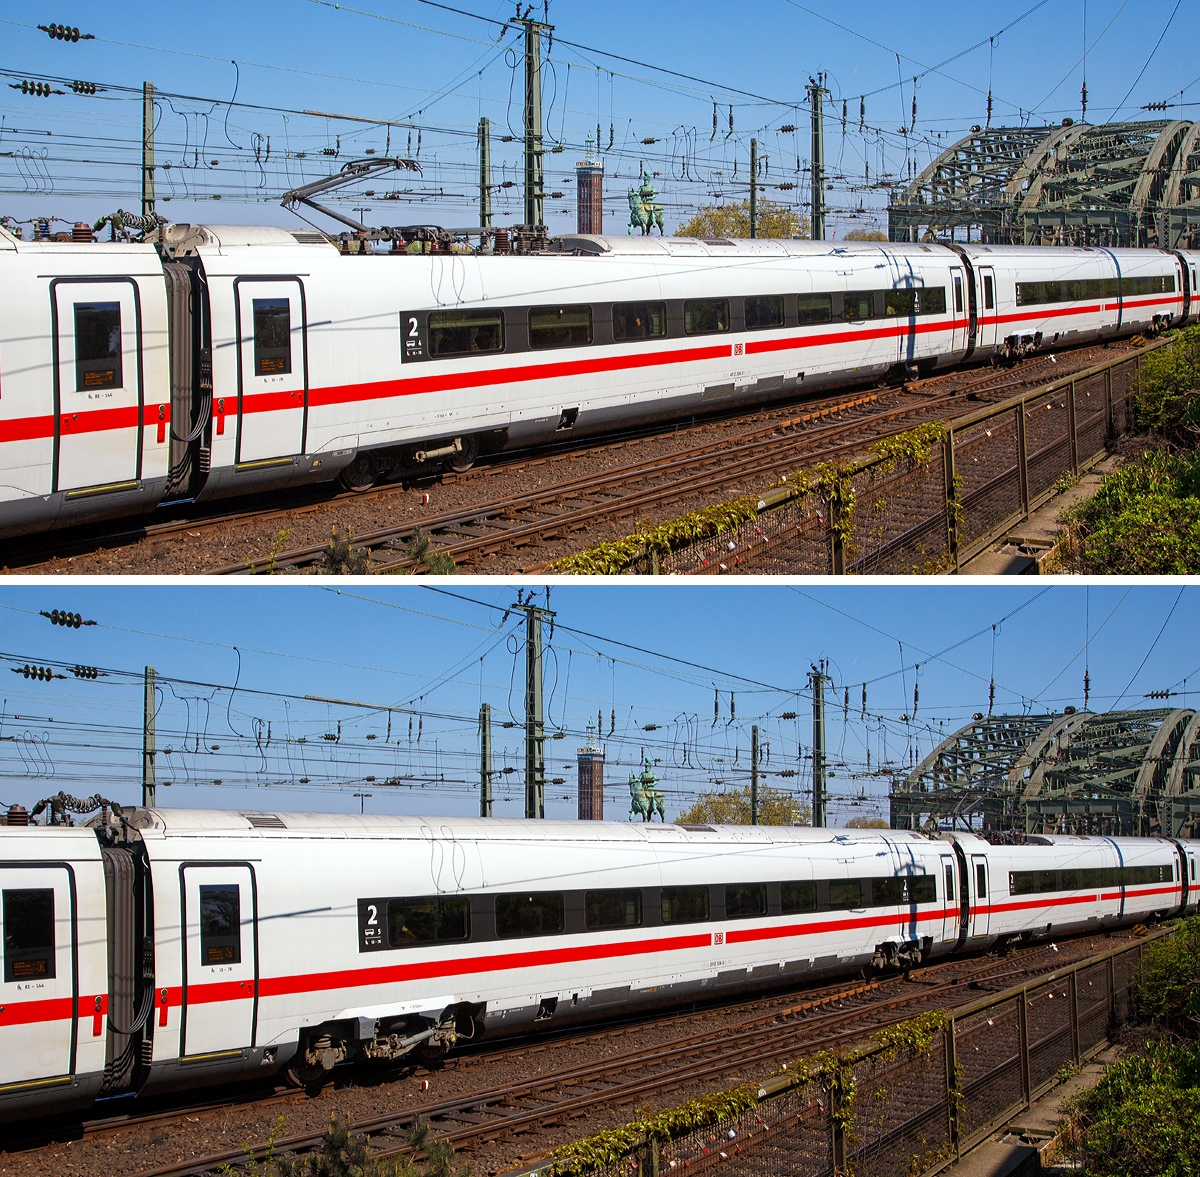 
Bild 3:
Als ICE 610 von Mnchen Hbf nach Dortmund Hbf, verlsst der zwlfteilige (Konfiguration K3s) ICE4 Triebzug (Tz) 9004 (93 80 5812 004-0 D-DB ff.) am 21.04.2019 den Hauptbahnhof Kln.

Oben:
Wagen-Nr. 4 – Bpmz antriebsloser 2. Klasse Mittelwagen mit Stromabnehmer 93 80 4812 004-3 D-DB
Unten:
Wagen-Nr. 5 – Bpmz angetriebener 2. Klasse Mittelwagen (Powercar) 93 80 2412 304-5 D-DB.
